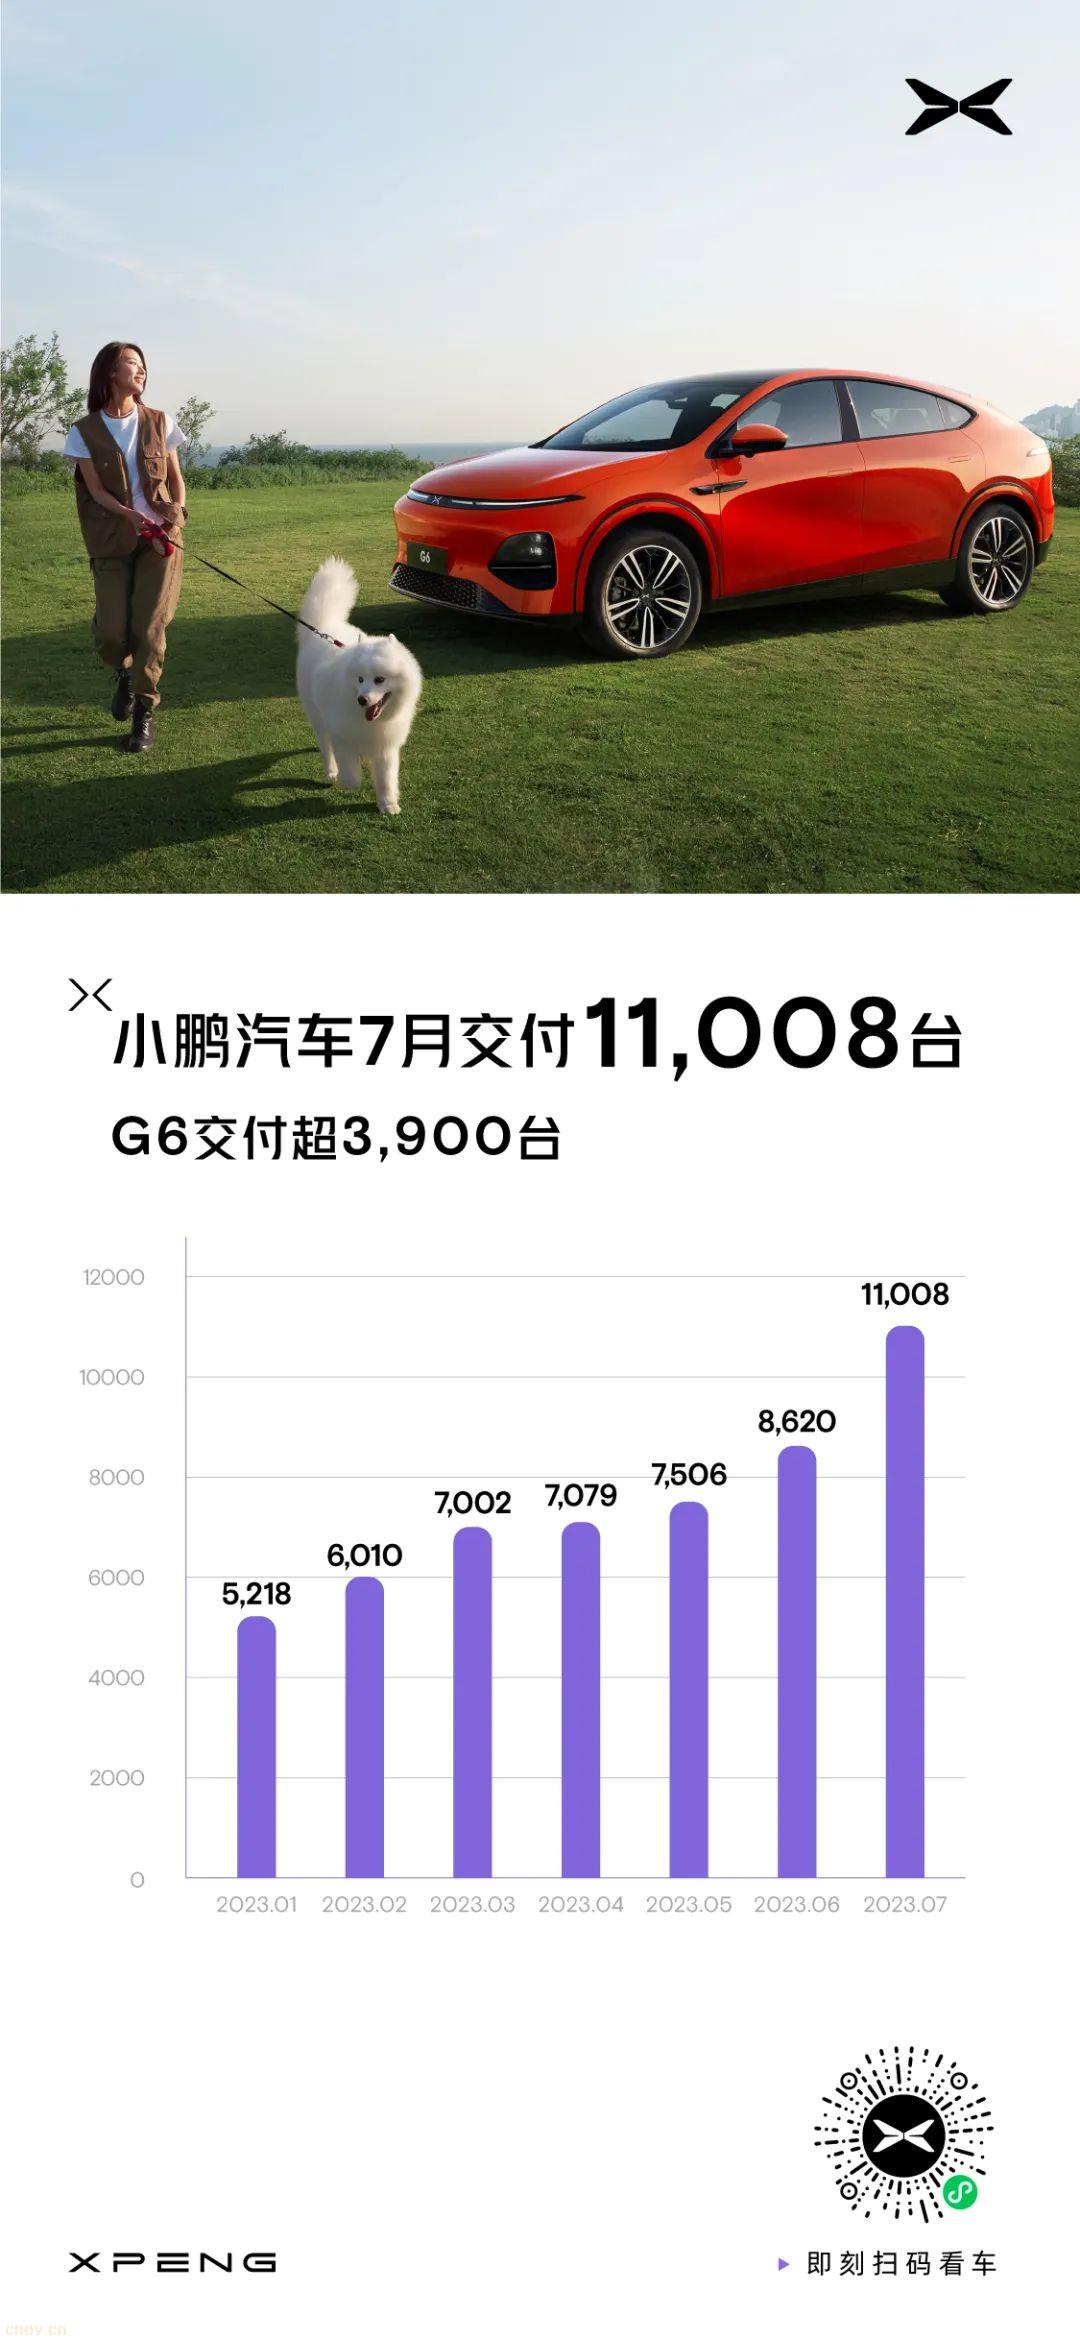 小鹏汽车7月交付11,008台，G6首月交付超3,900台